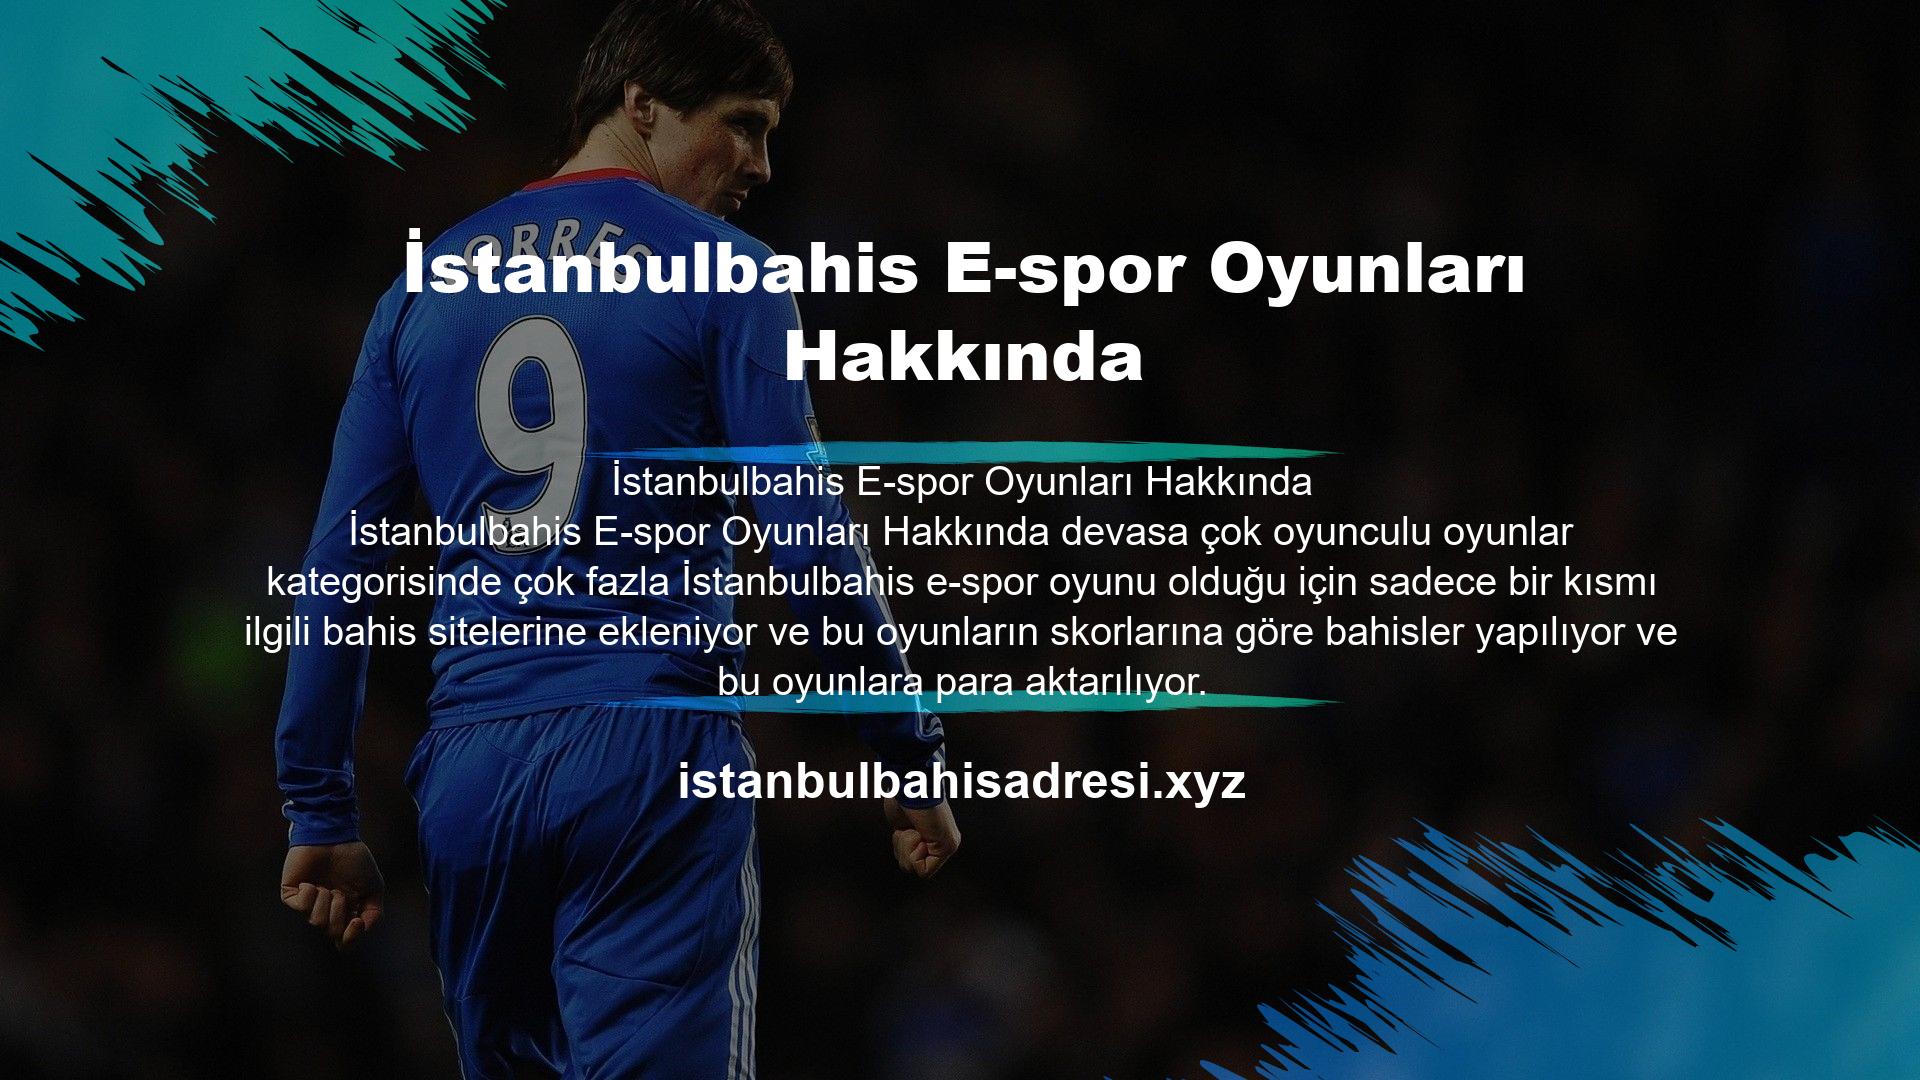 Sitede sunulan İstanbulbahis e-spor seçeneklerinden yararlanmak ve bahis yapmak isteyen kullanıcıların öncelikle kayıt olmaları gerekmektedir